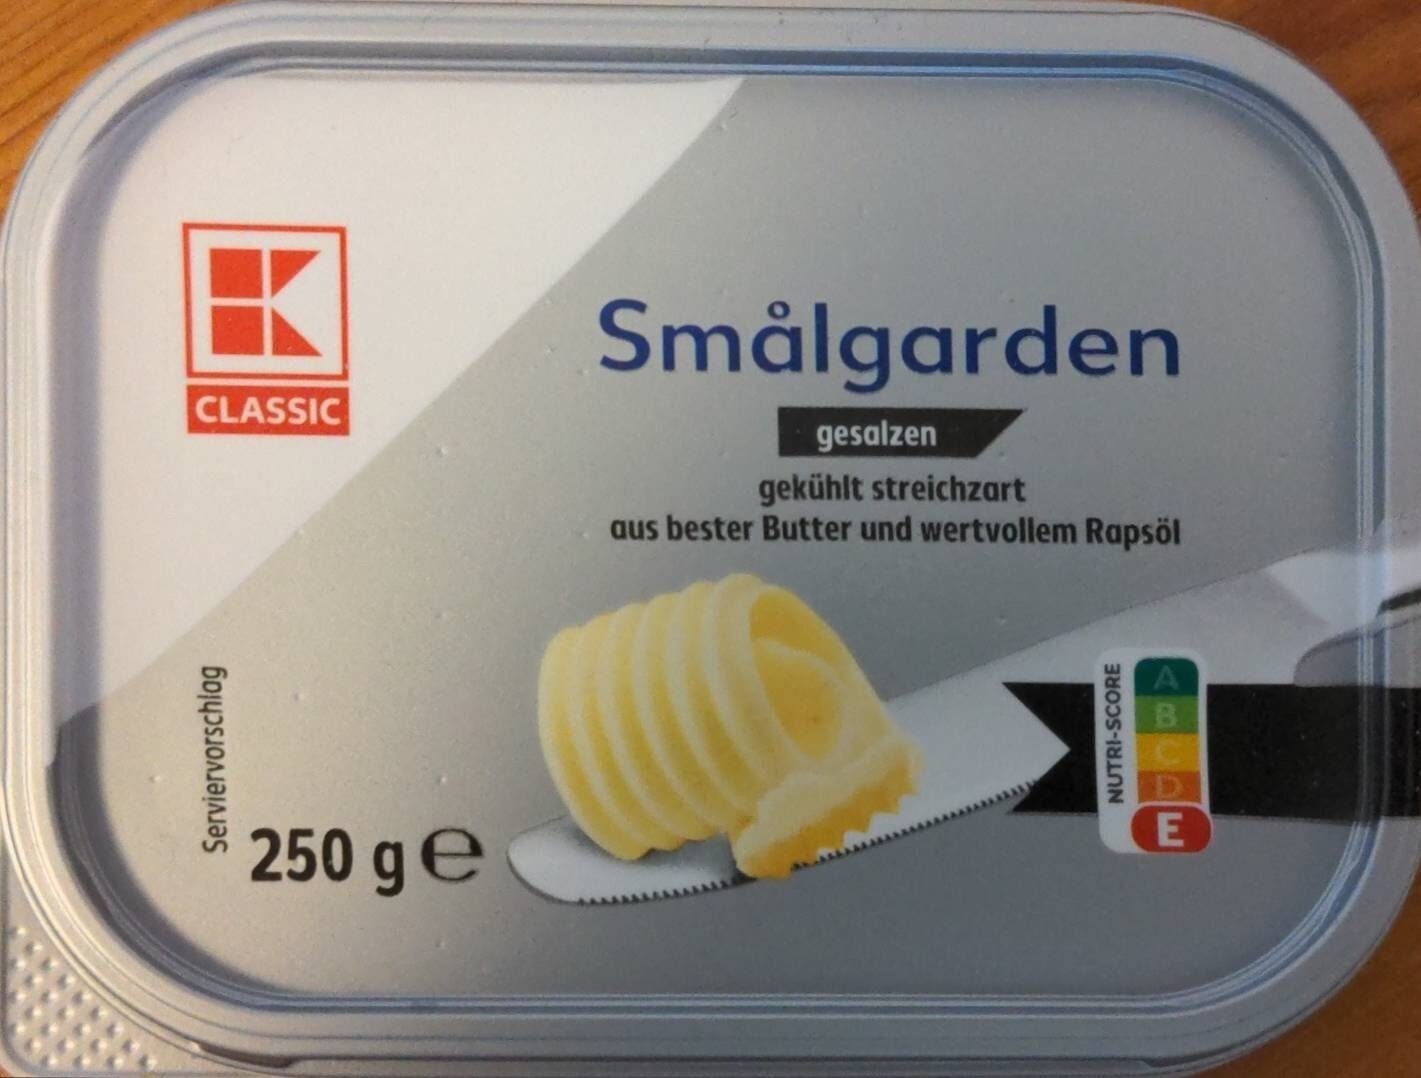 Butter gesalzen - K Classic - Produkt